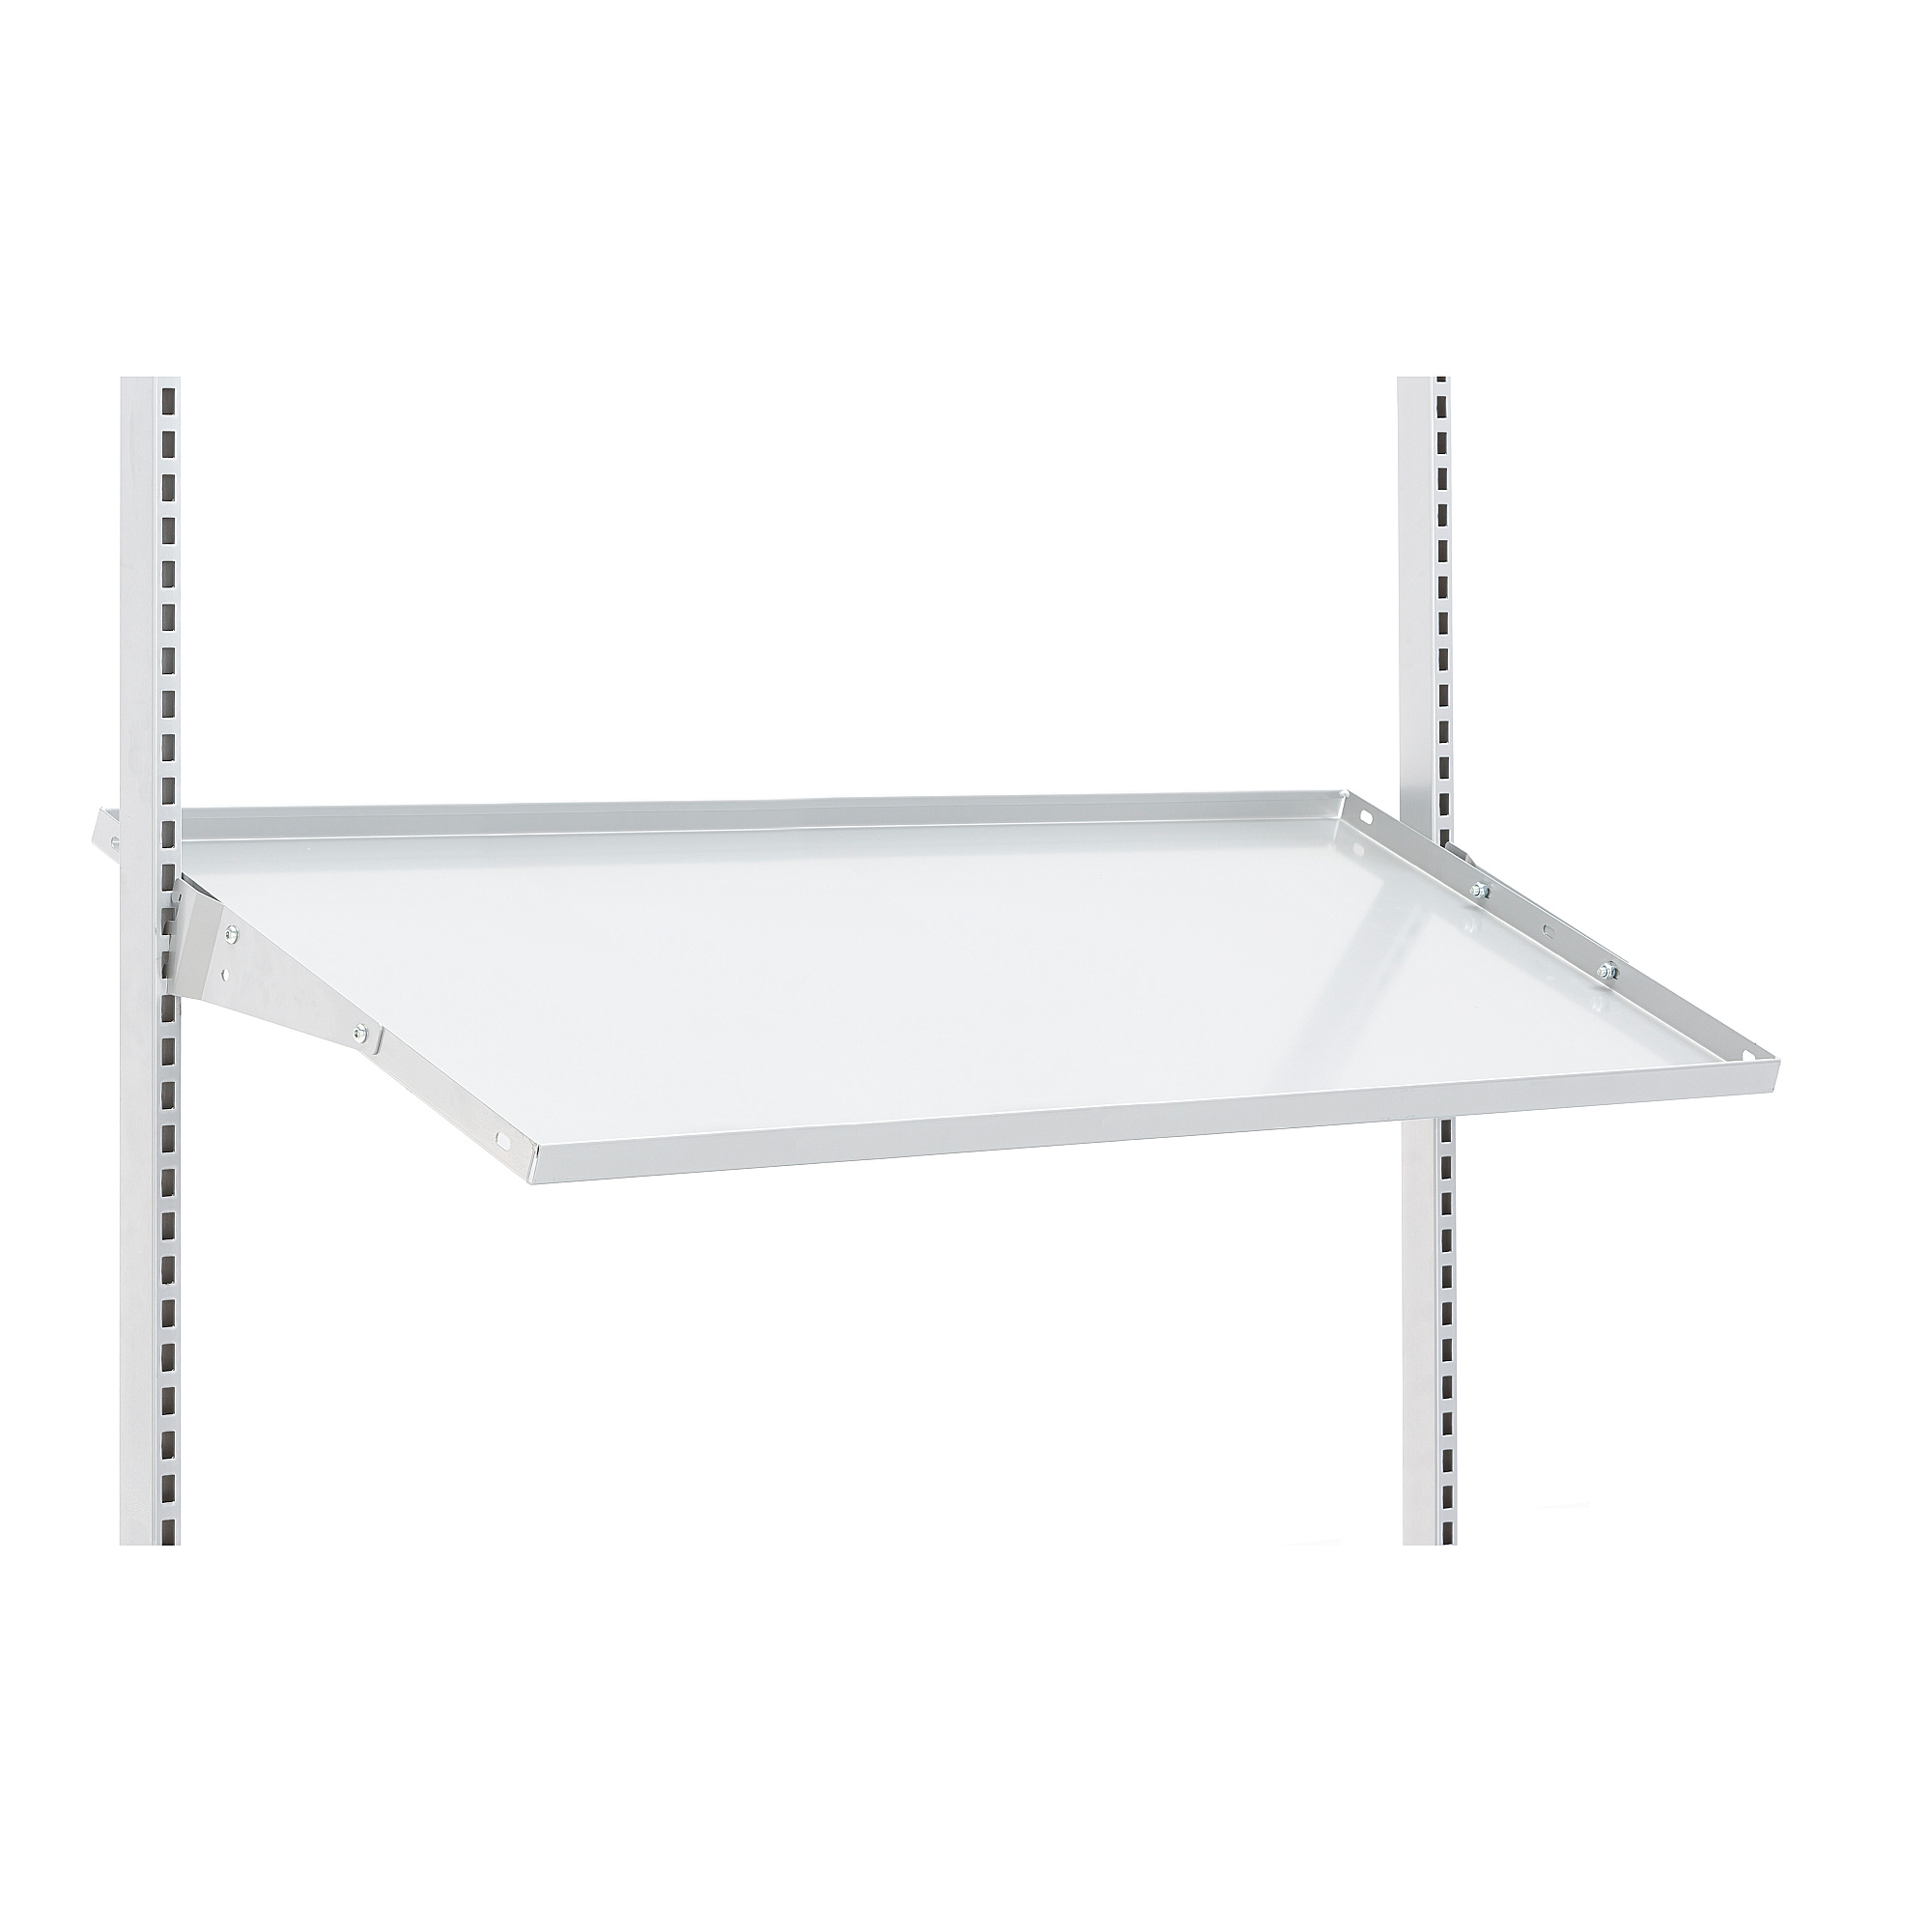 Angled Metal Shelf For Workbench Motion, Elfa Angled Solid Metal Shelves